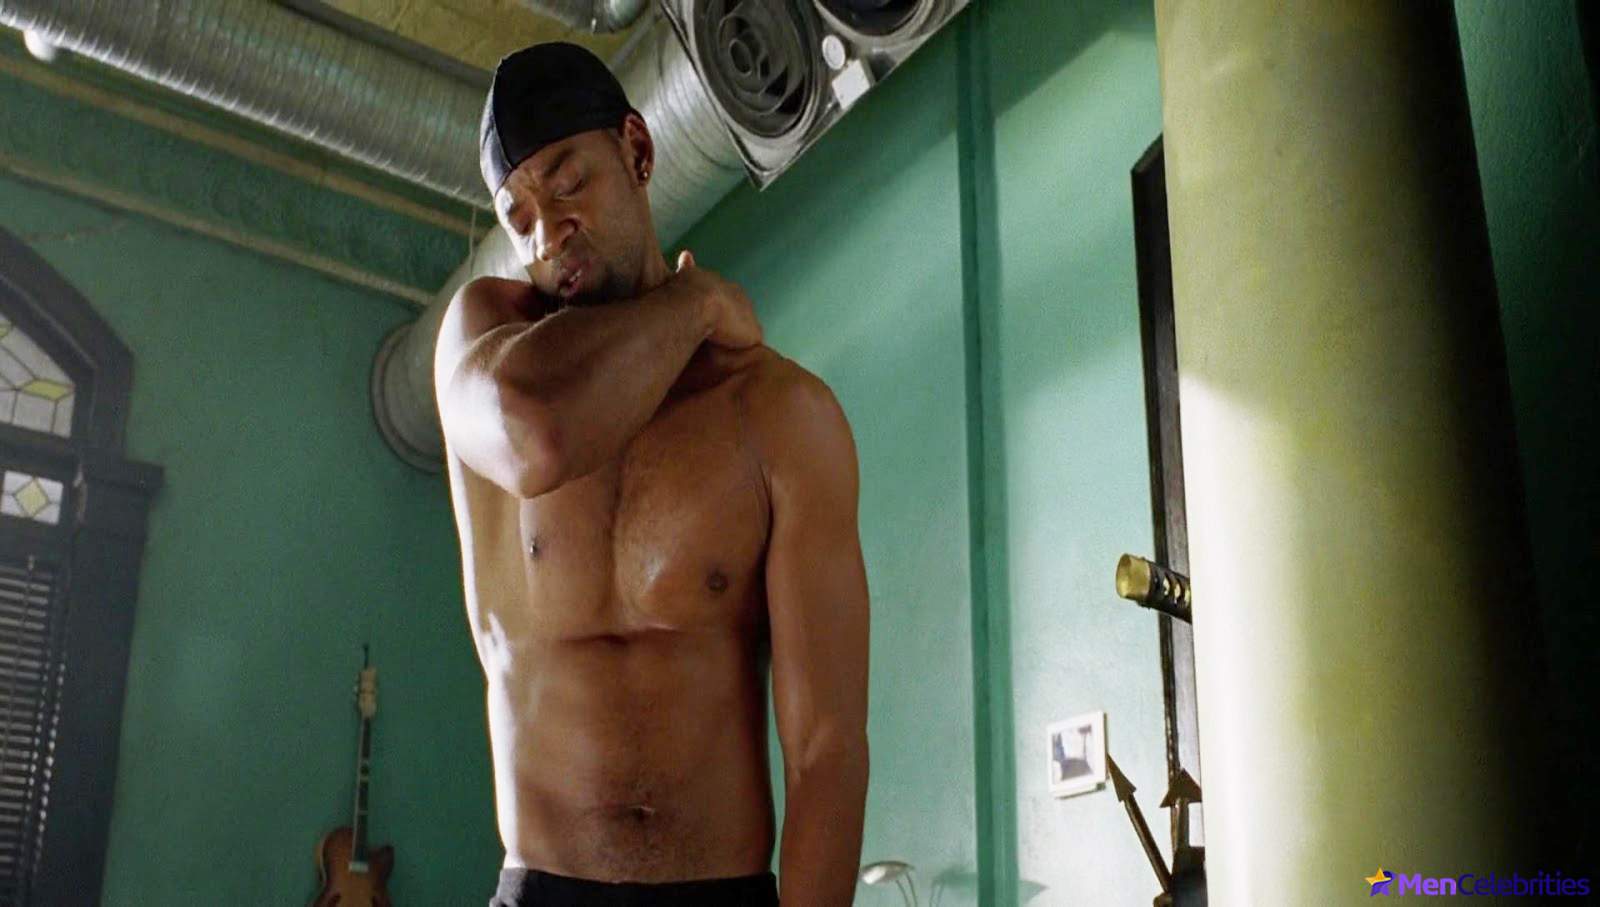 Will Smith nude movie scenes.